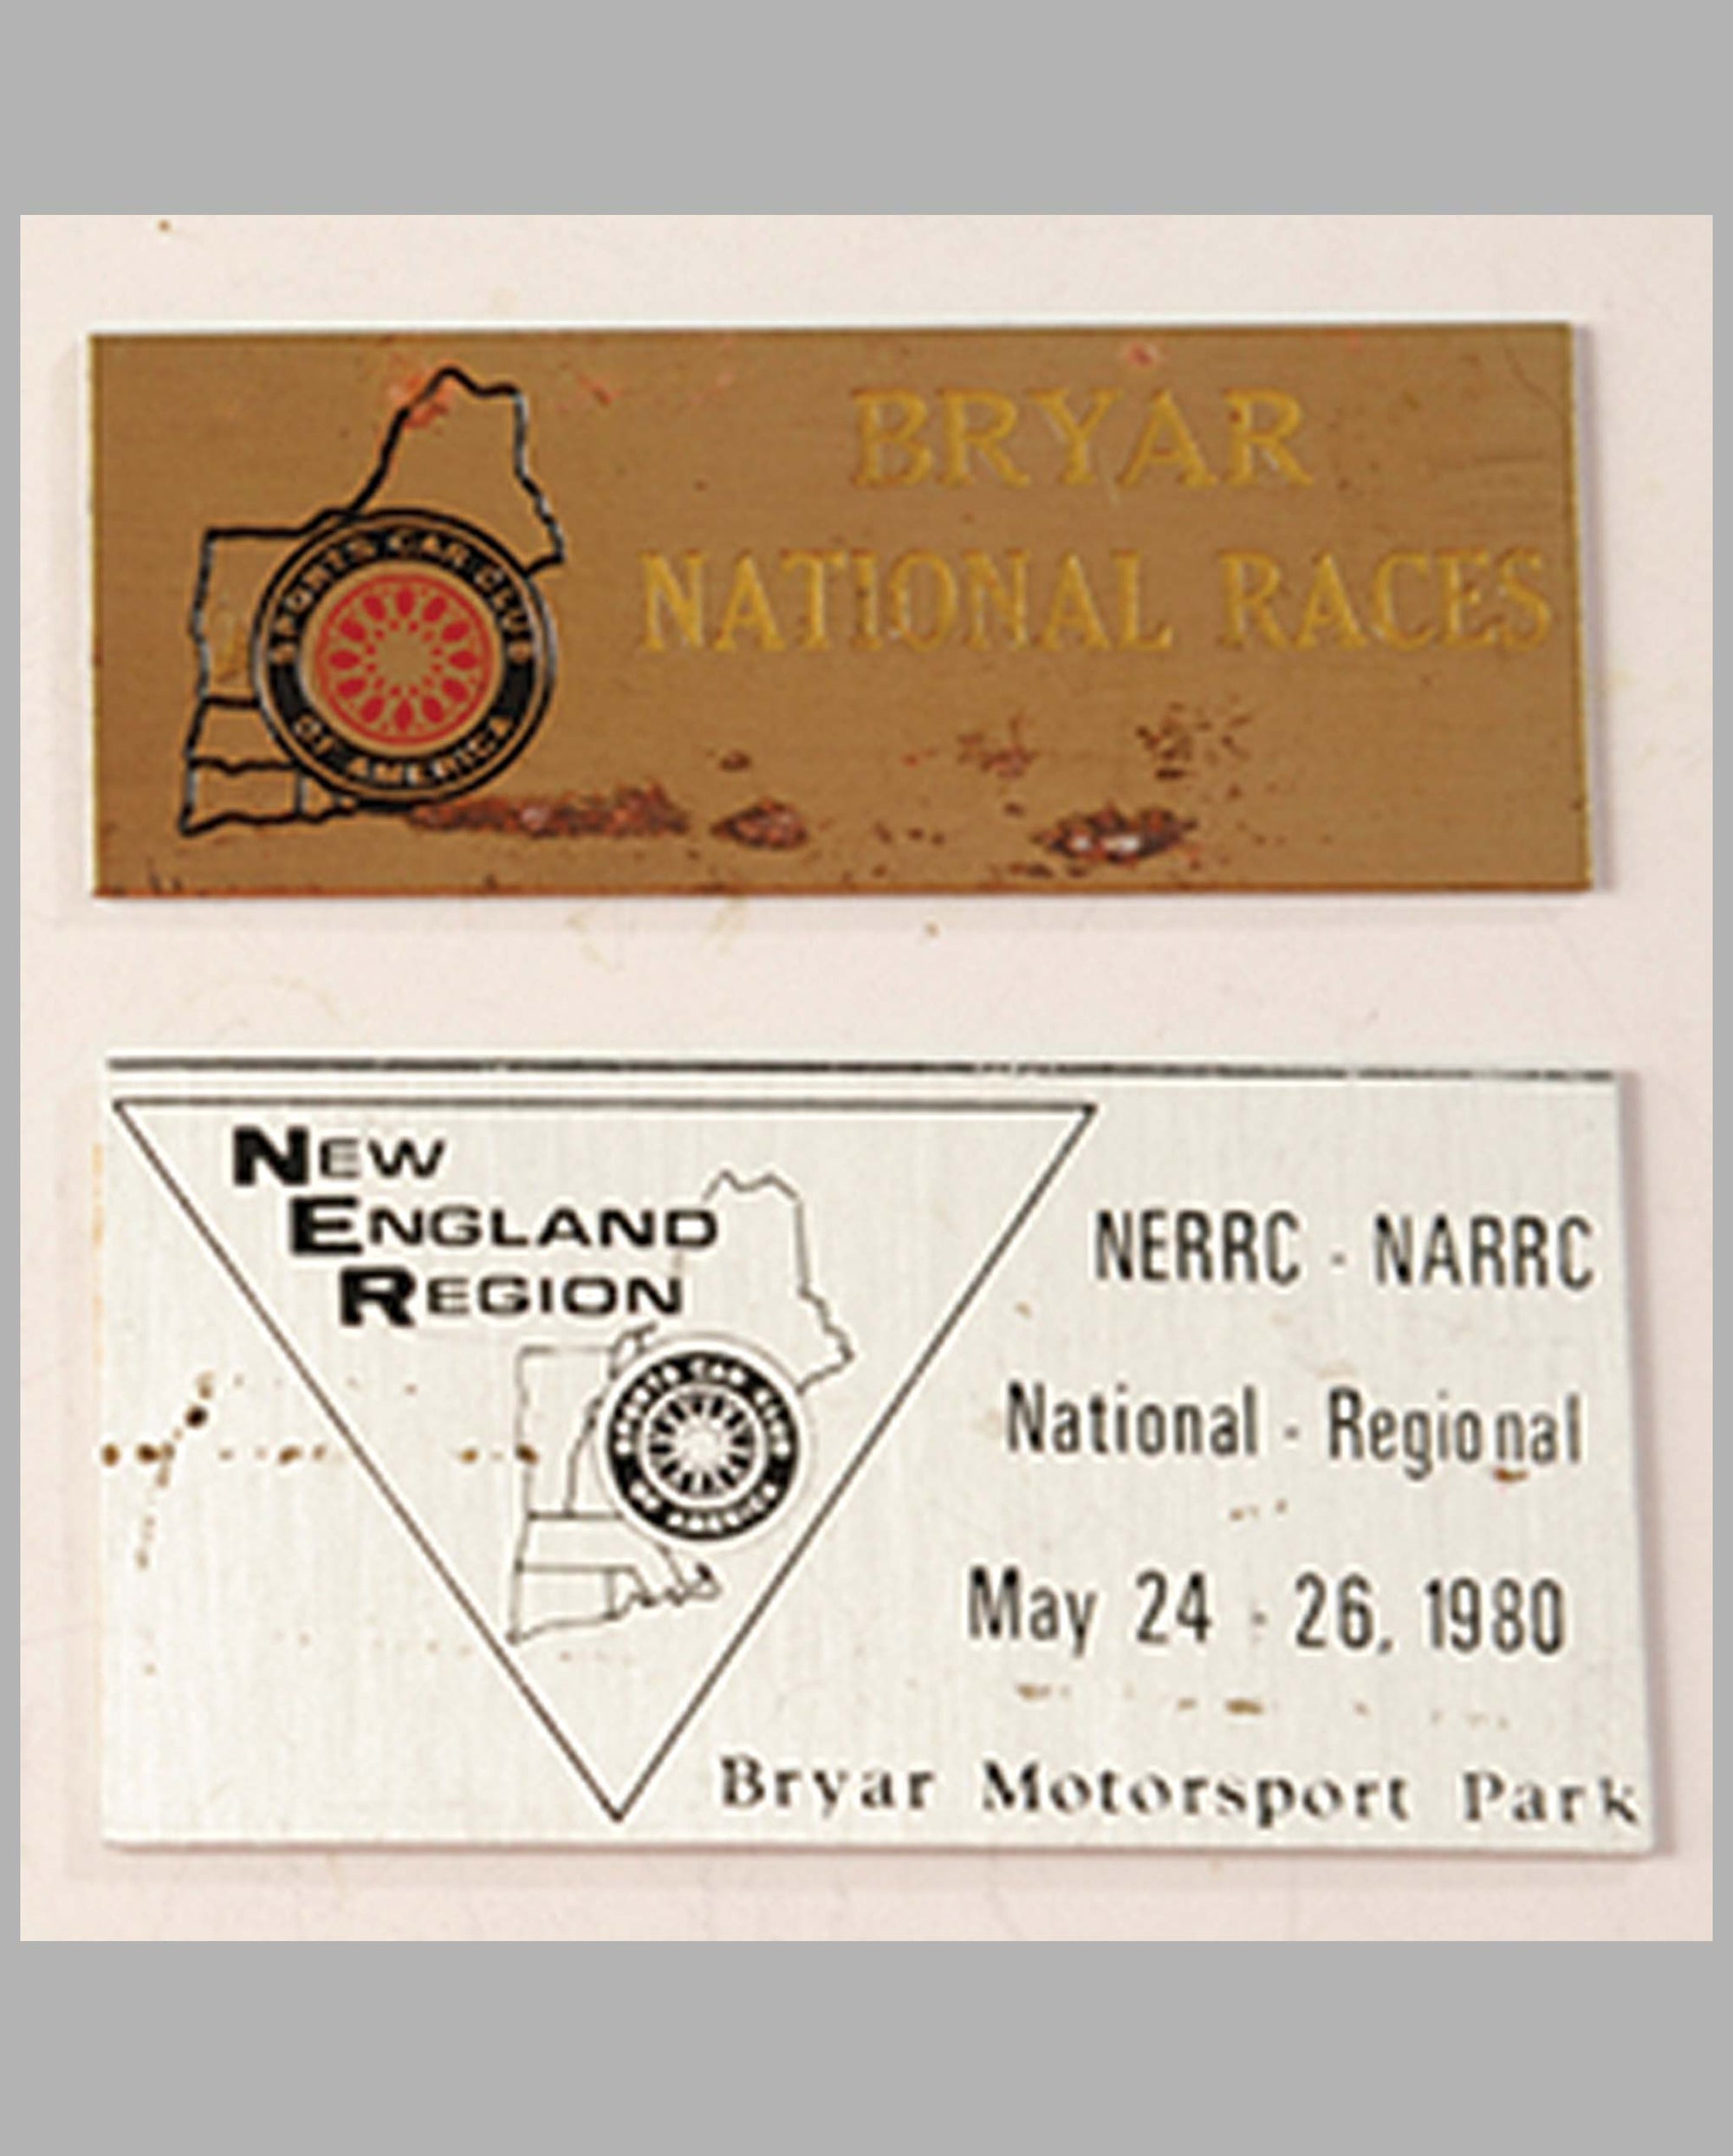 Two SCCA-Bryar participant’s dash plaques, National Races, 1960's